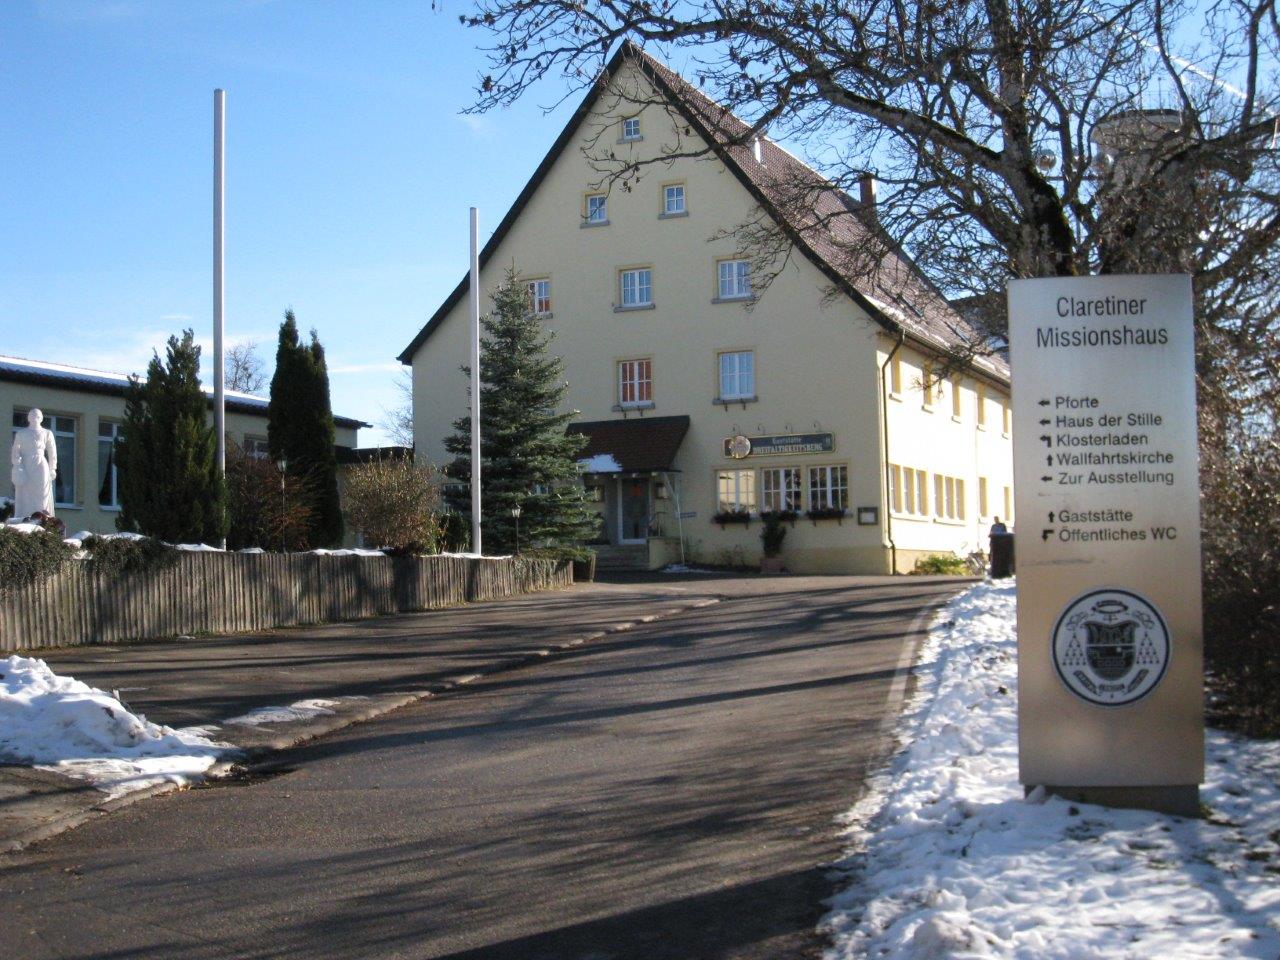 Klostergaststätte
Dreifaltikeitsberg